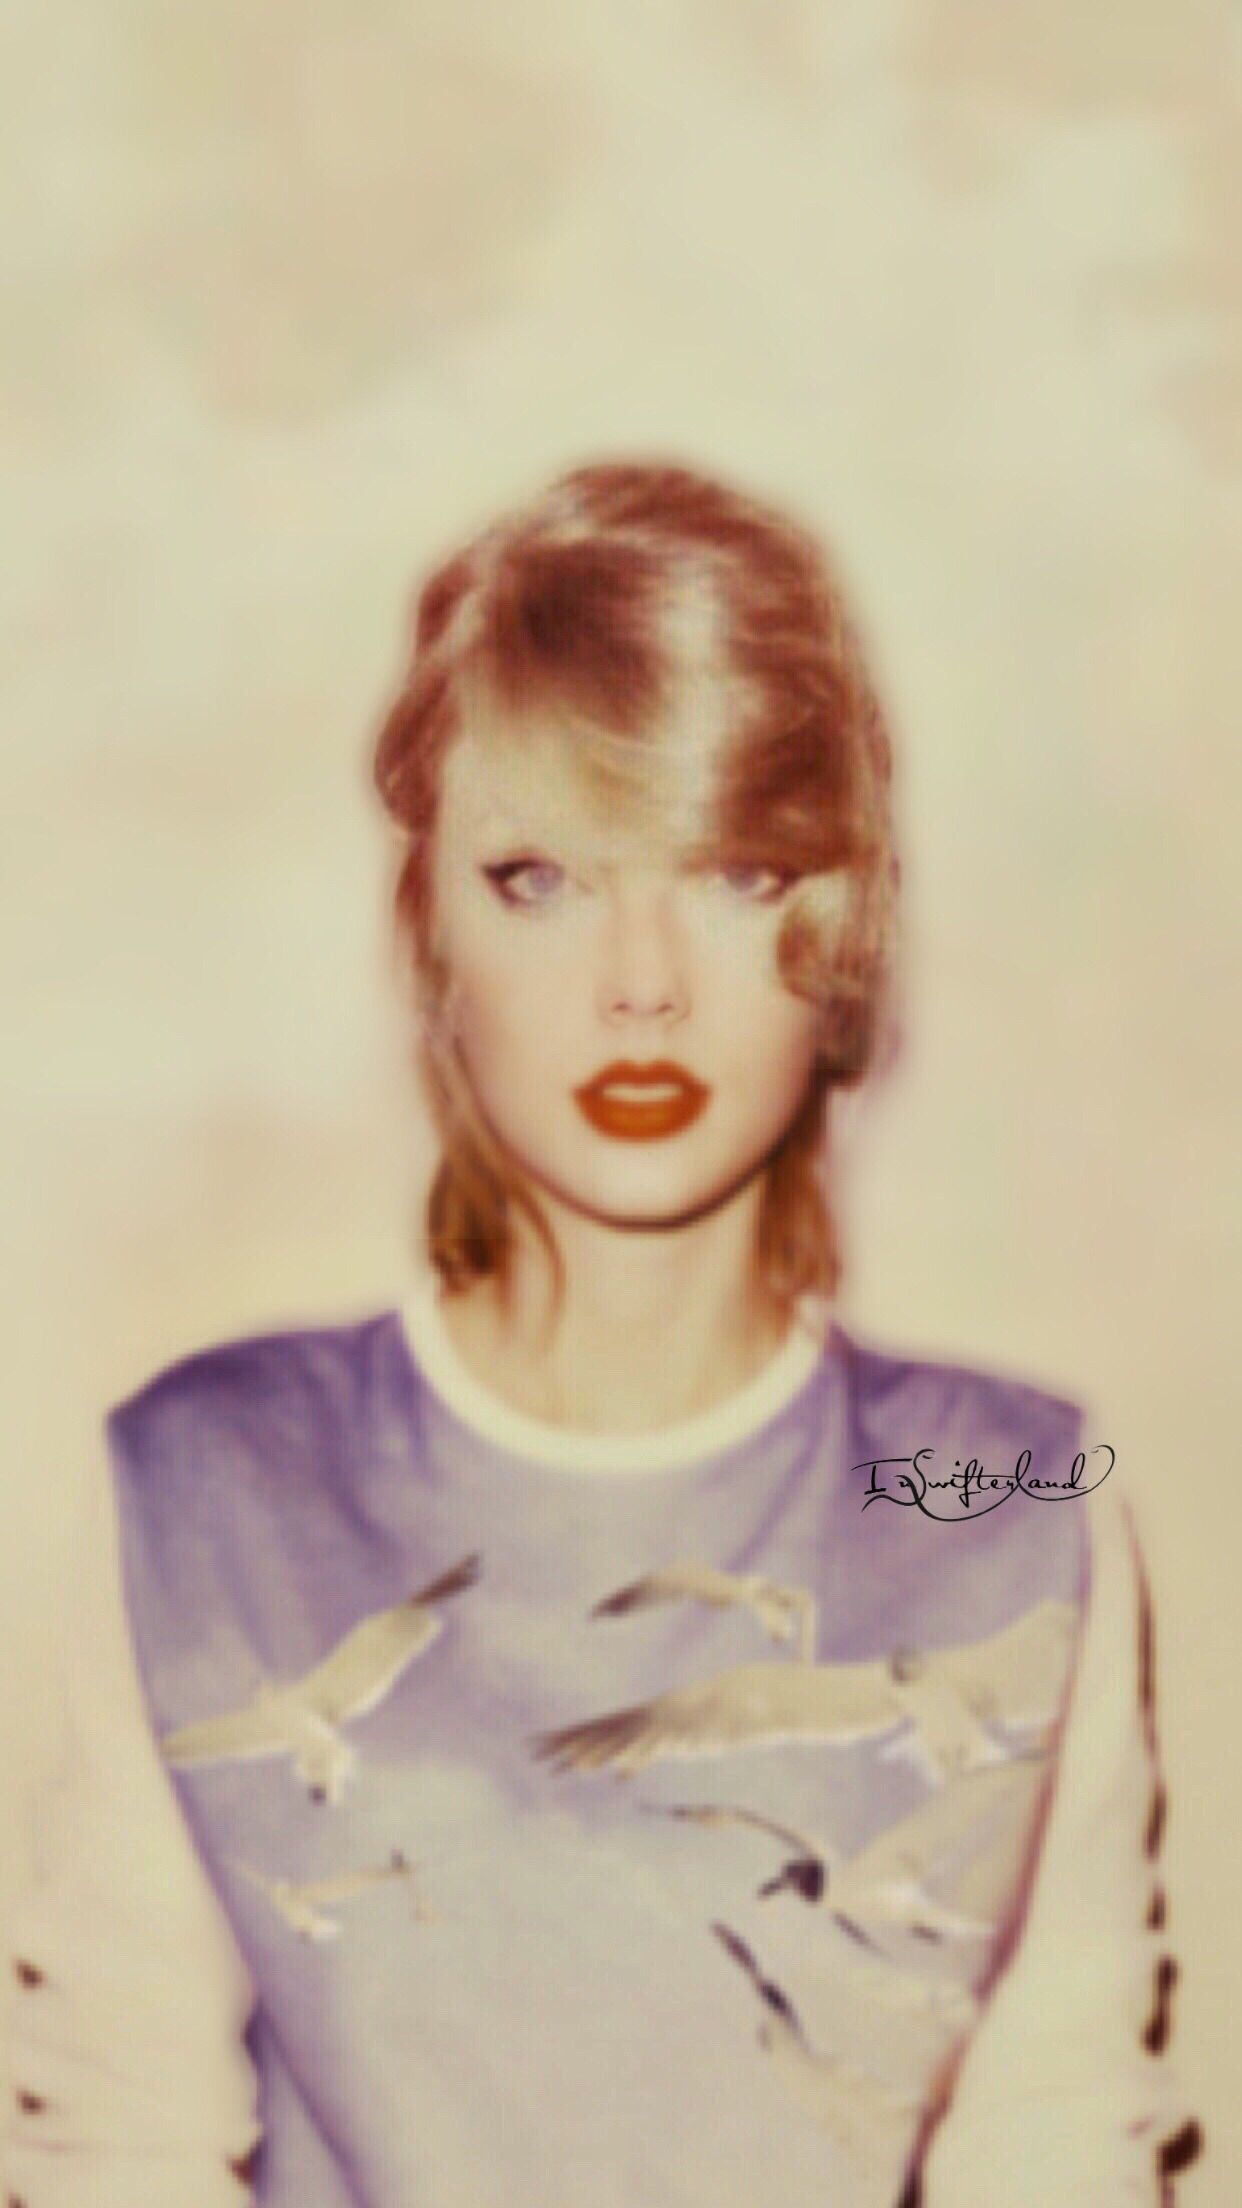 Taylor Swift Wallpaper. Taylor swift wallpaper, Taylor swift album, Taylor swift picture